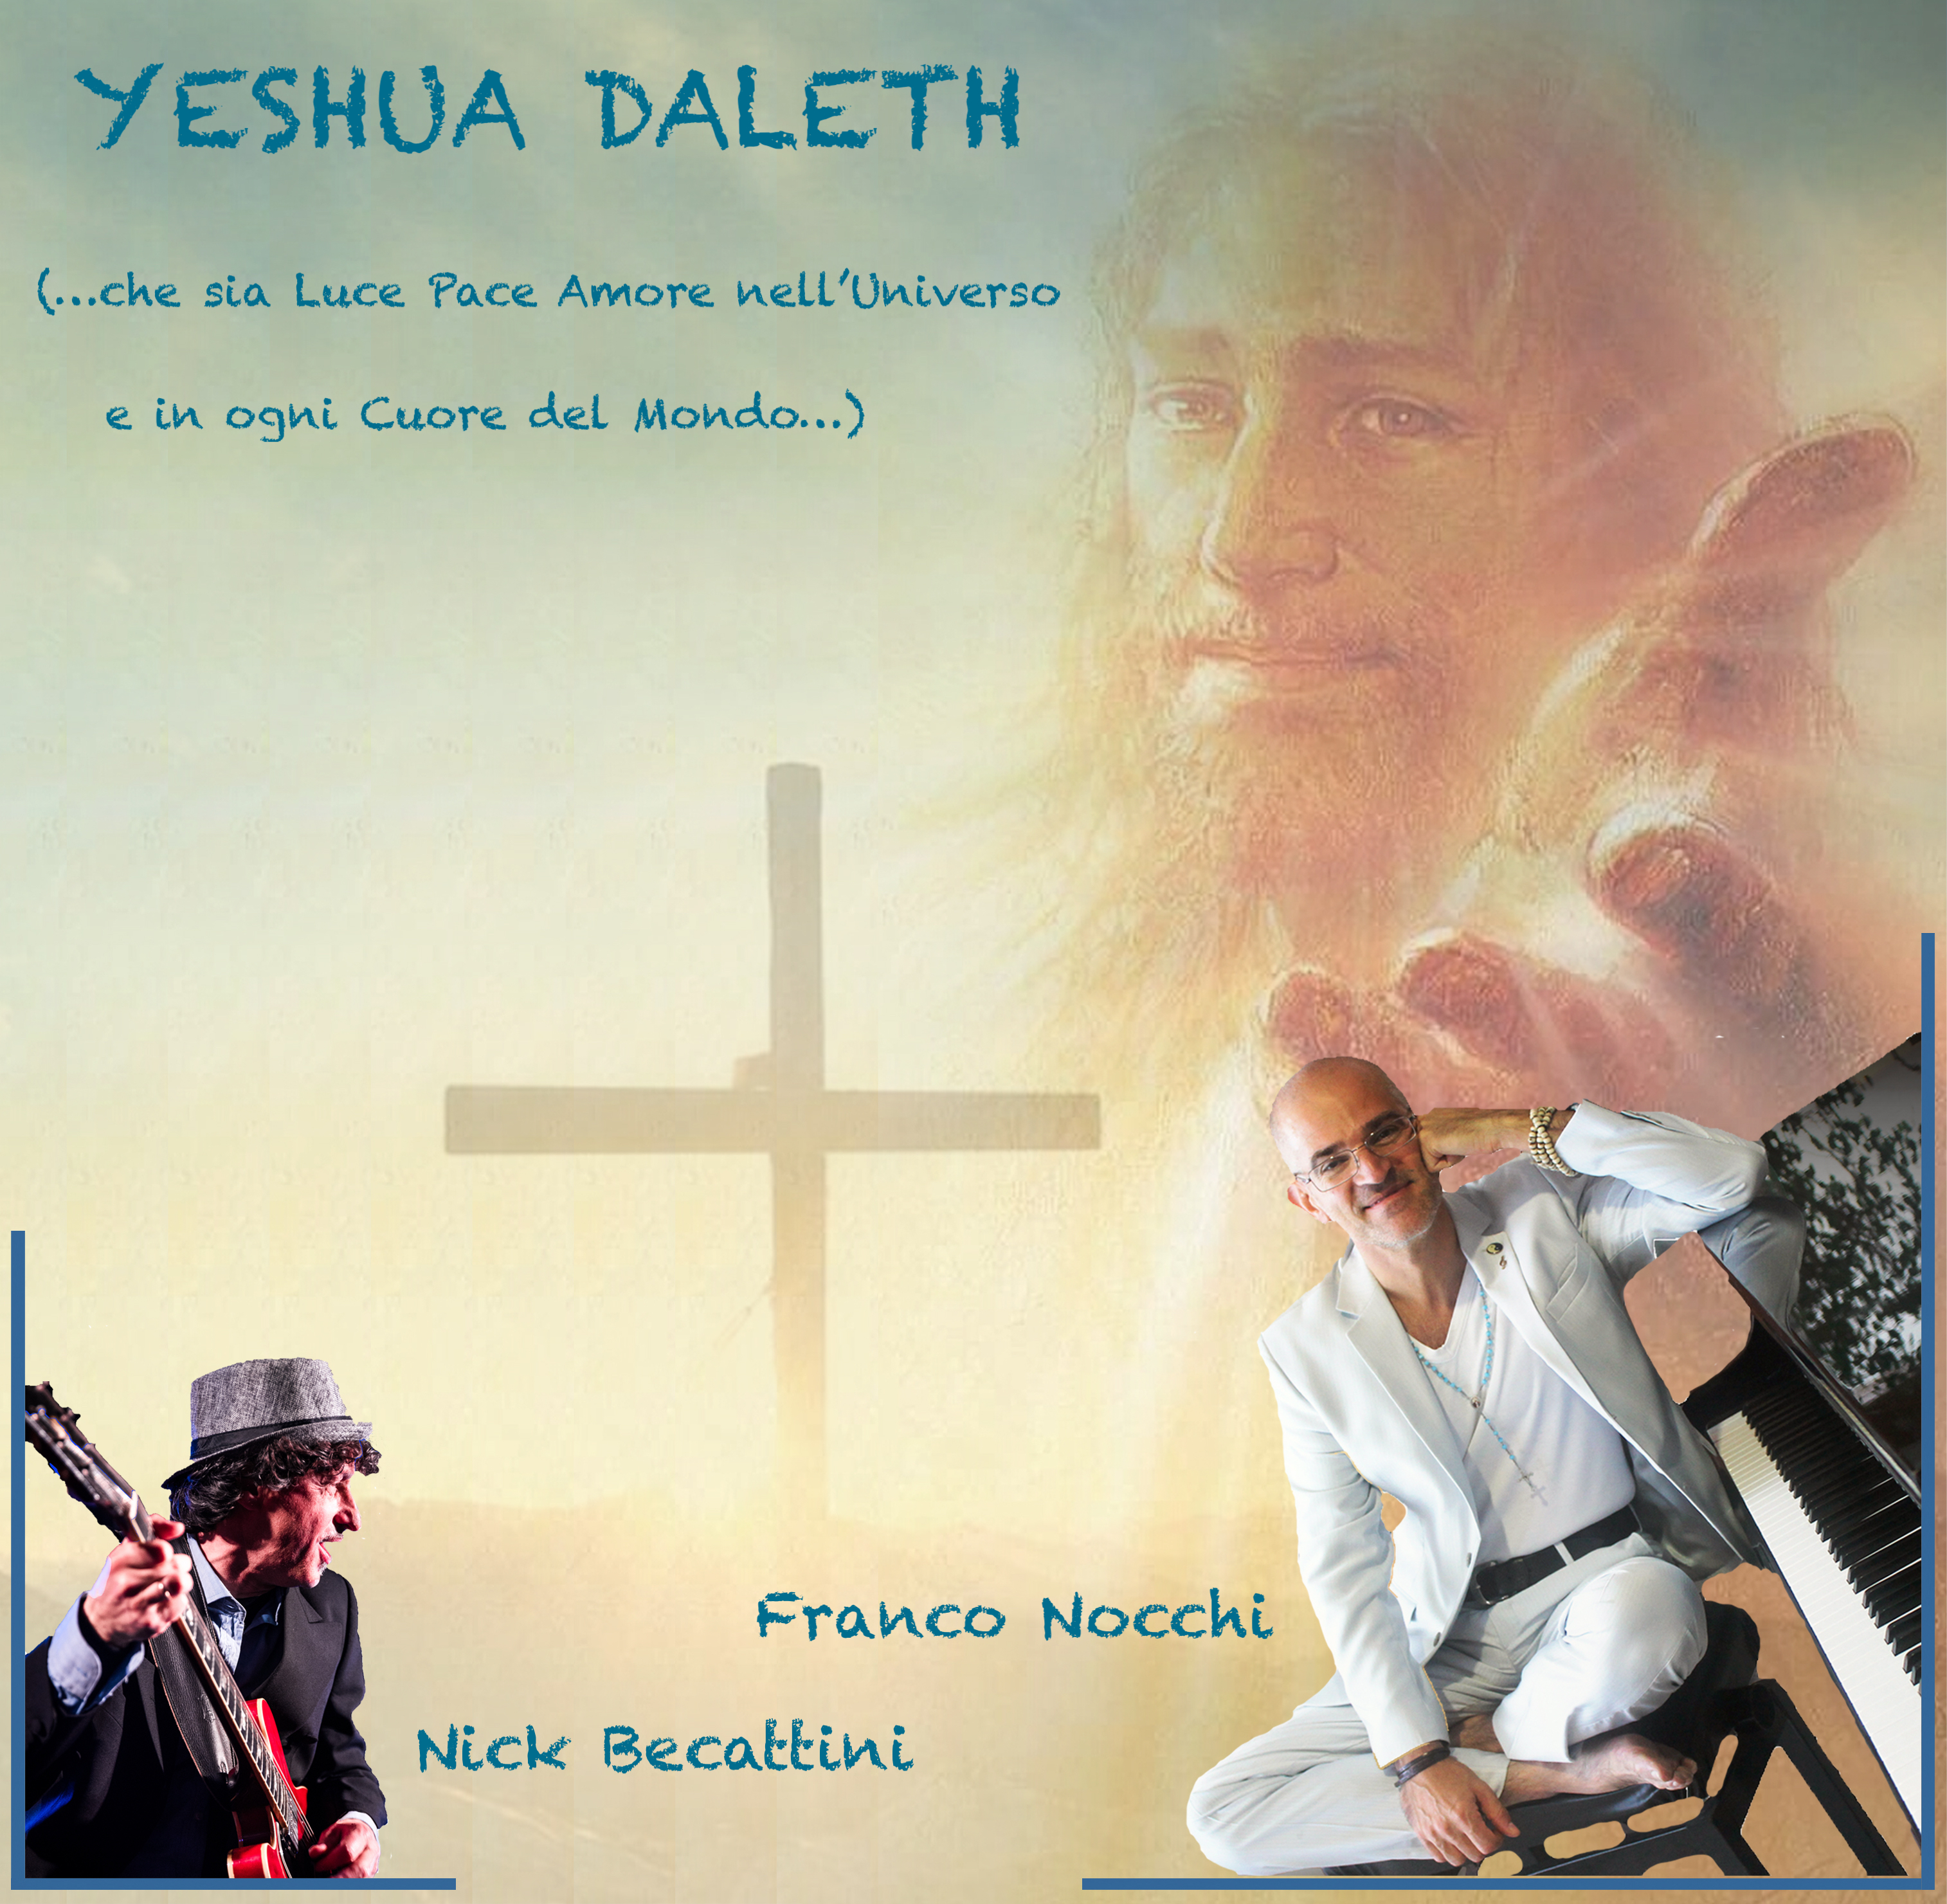 FRANCO NOCCHI “Yeshua Daleth” è il nuovo singolo del musicista e sociologo: un gospel moderno arricchito da 9 musicisti e un coro di bambini.